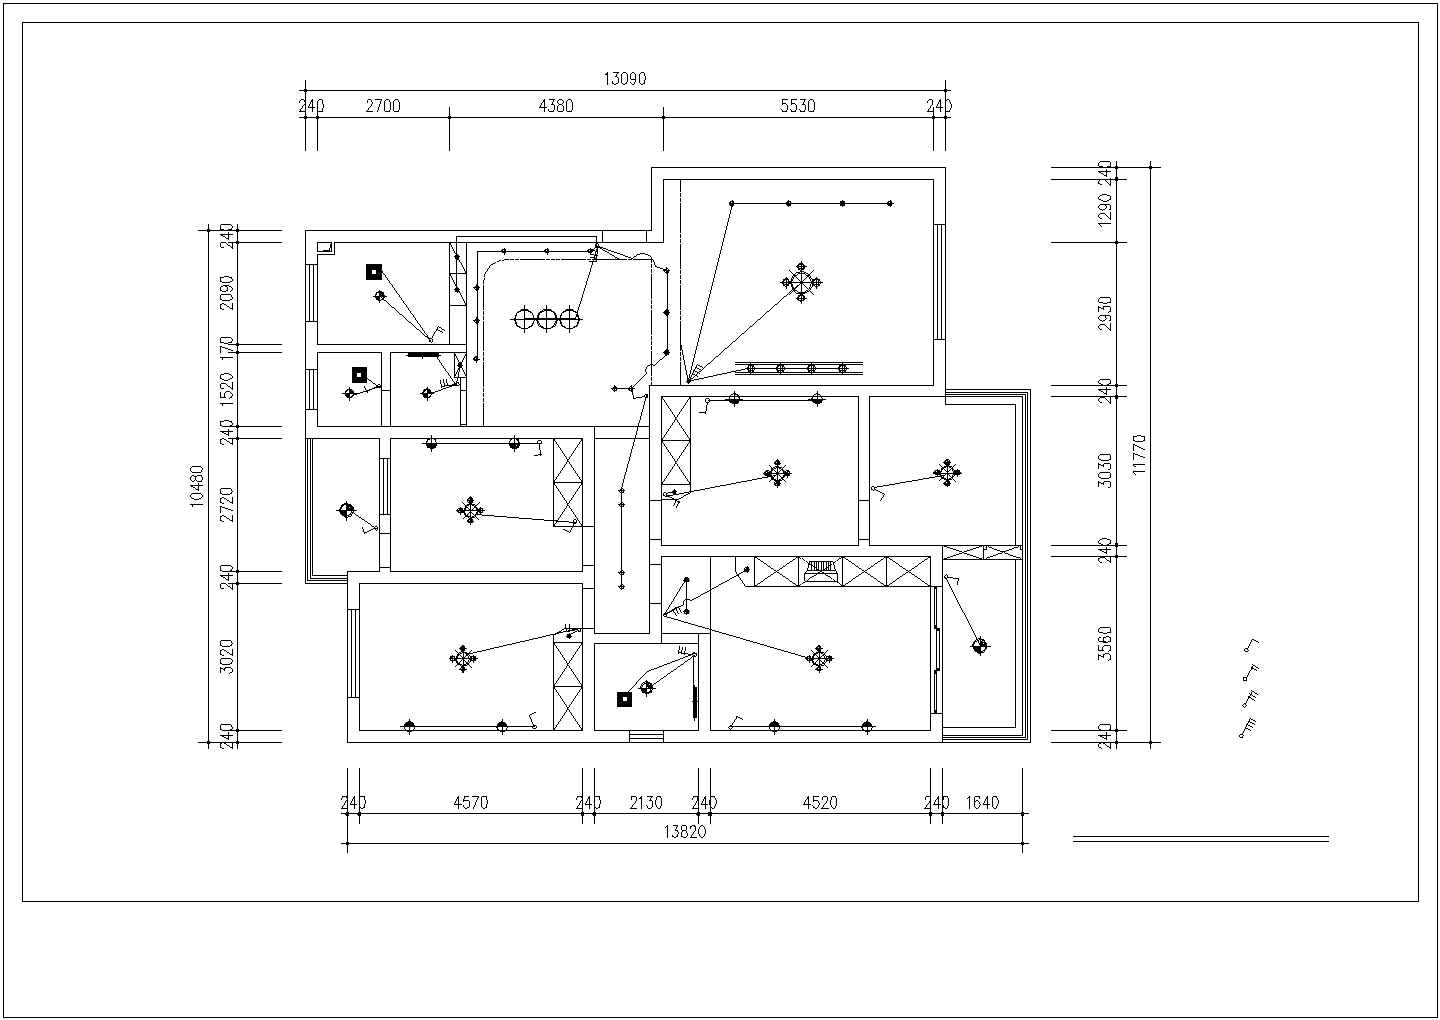 香樟园小区多层住宅全套装修施工设计cad图(含插座布置图)